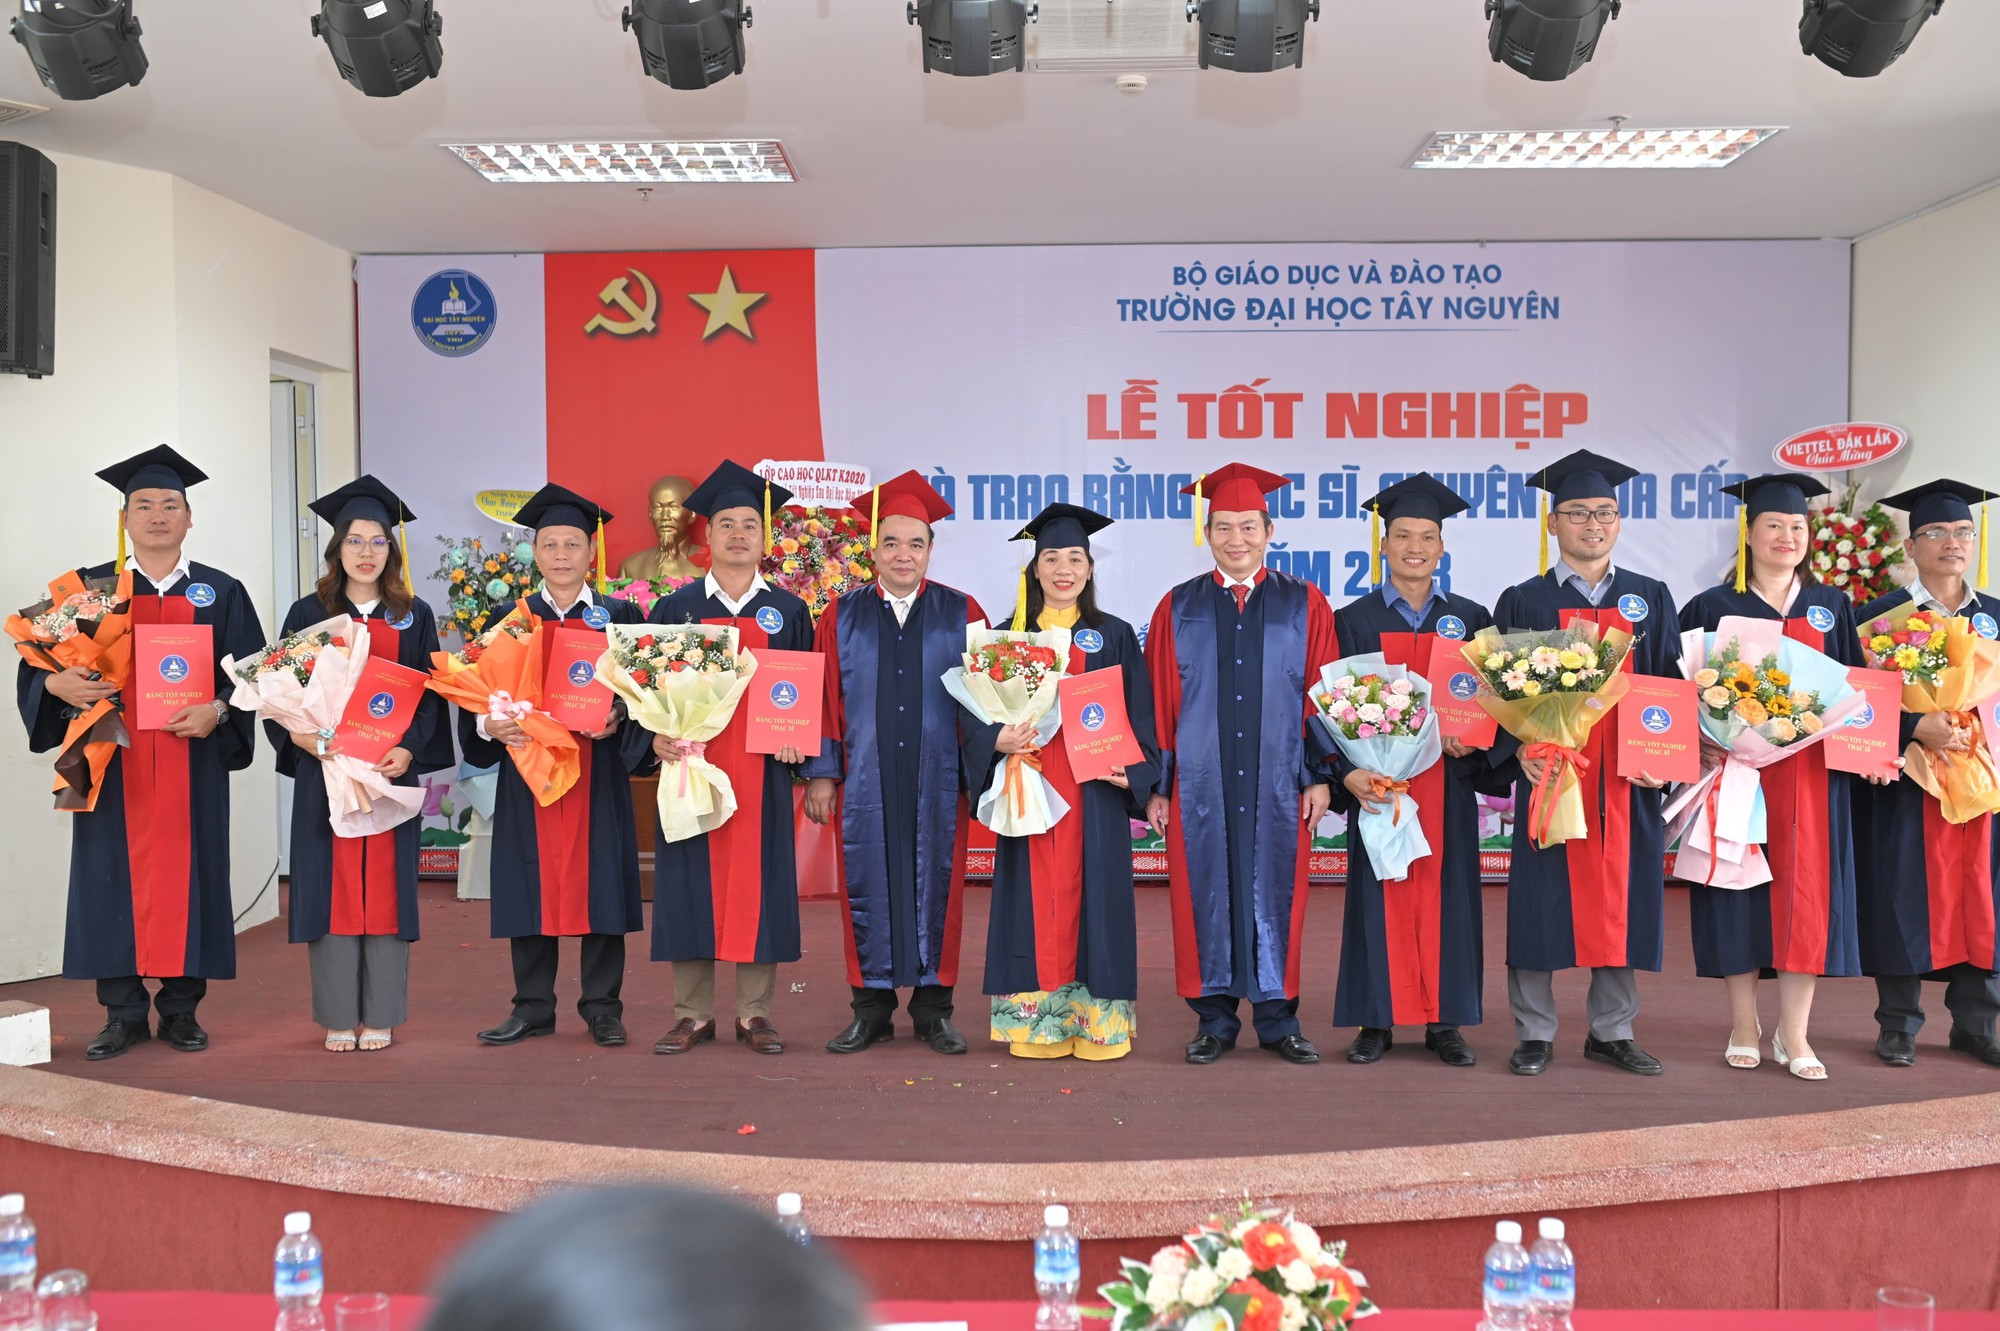 Trường Đại học Tây Nguyên trao bằng tốt nghiệp cho 144 tân thạc sỹ, bác sỹ chuyên khoa 1 - Ảnh 2.